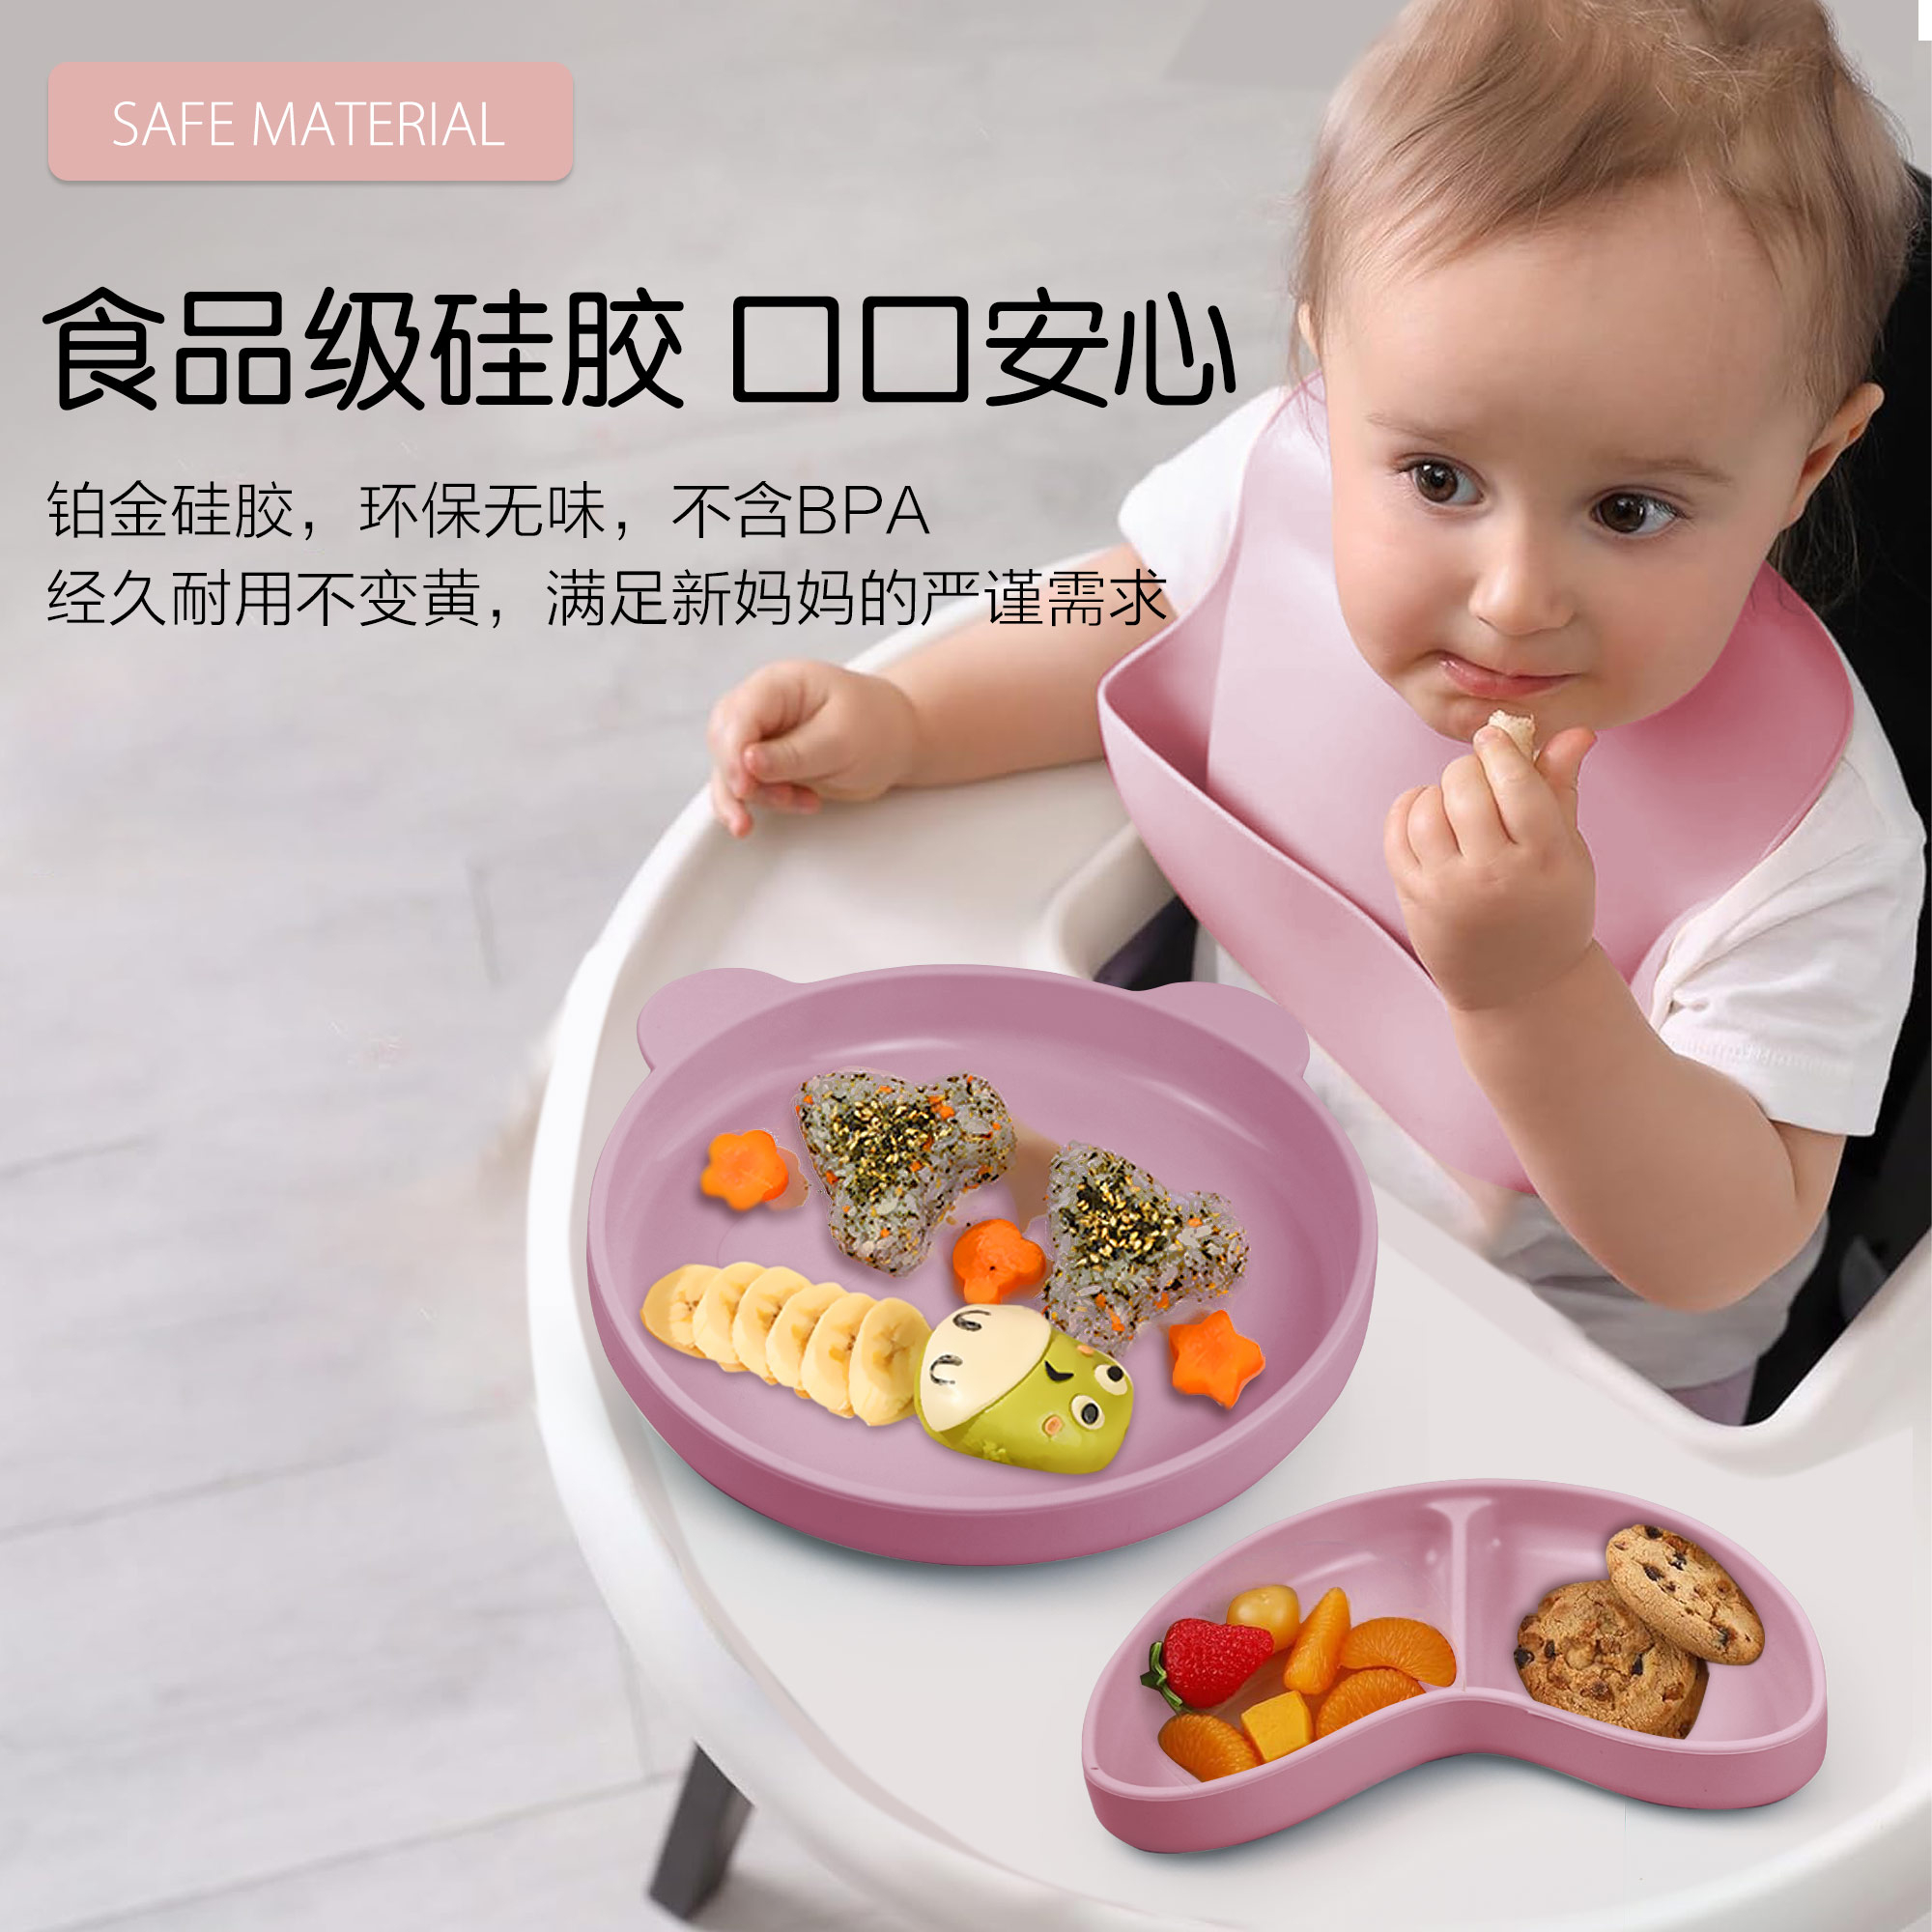 宝宝热销餐盘可拆分食品级硅胶分隔盘辅食吸盘三格儿童硅胶餐盘